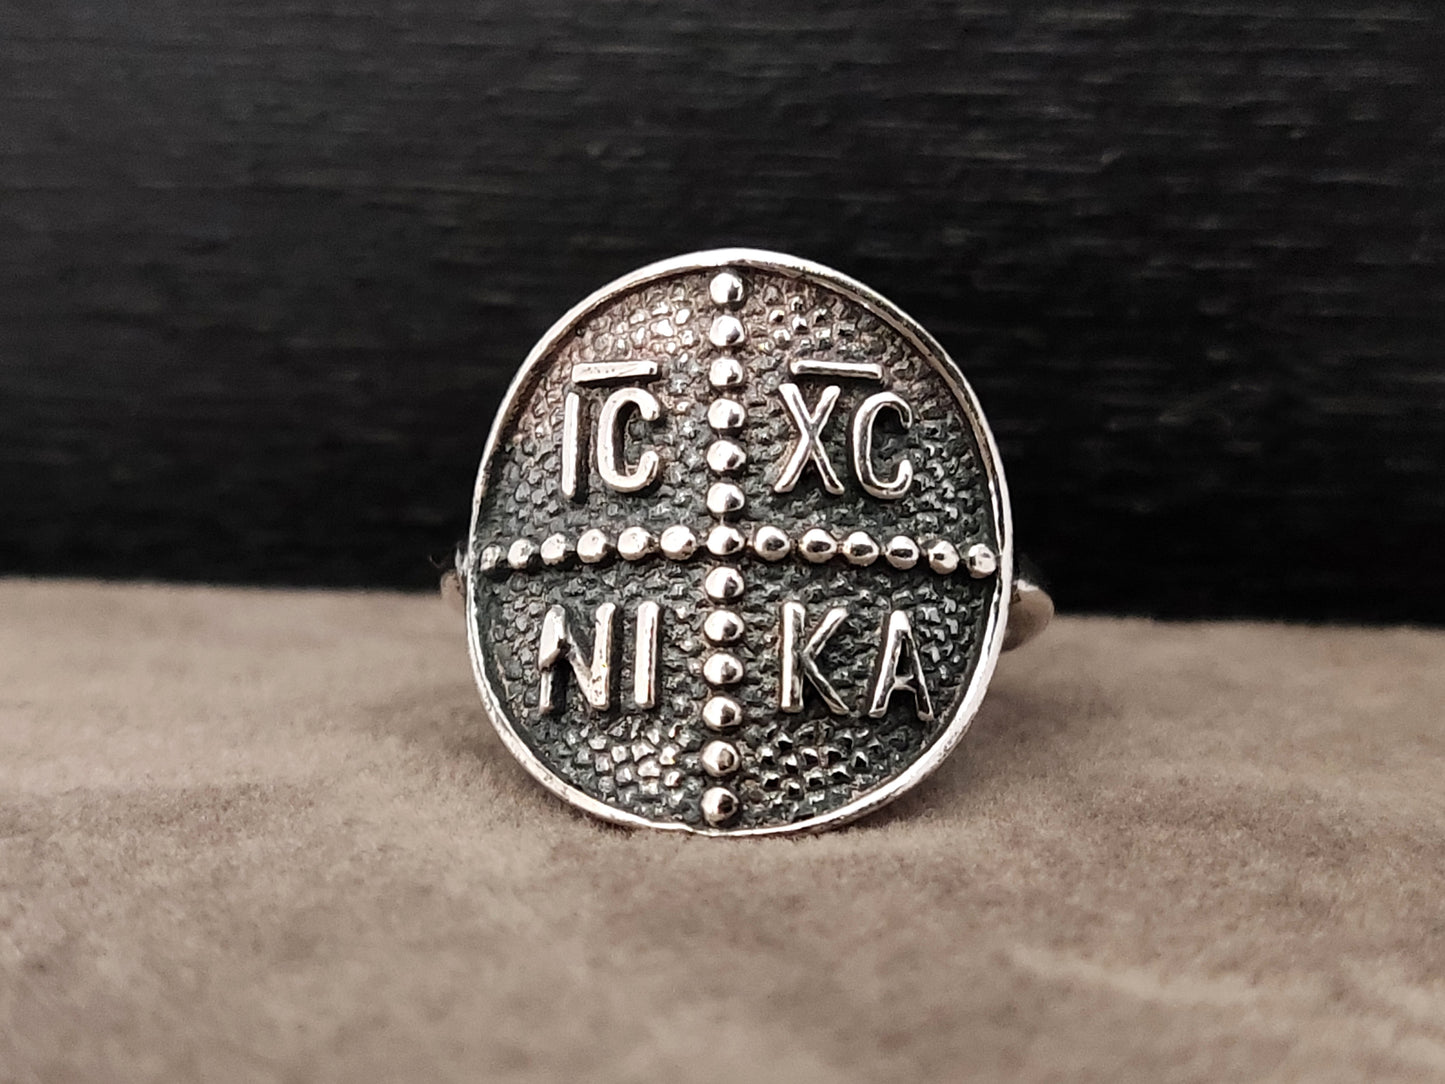 Bague en argent avec croix grecque byzantine ICXC NIKA 19 mm